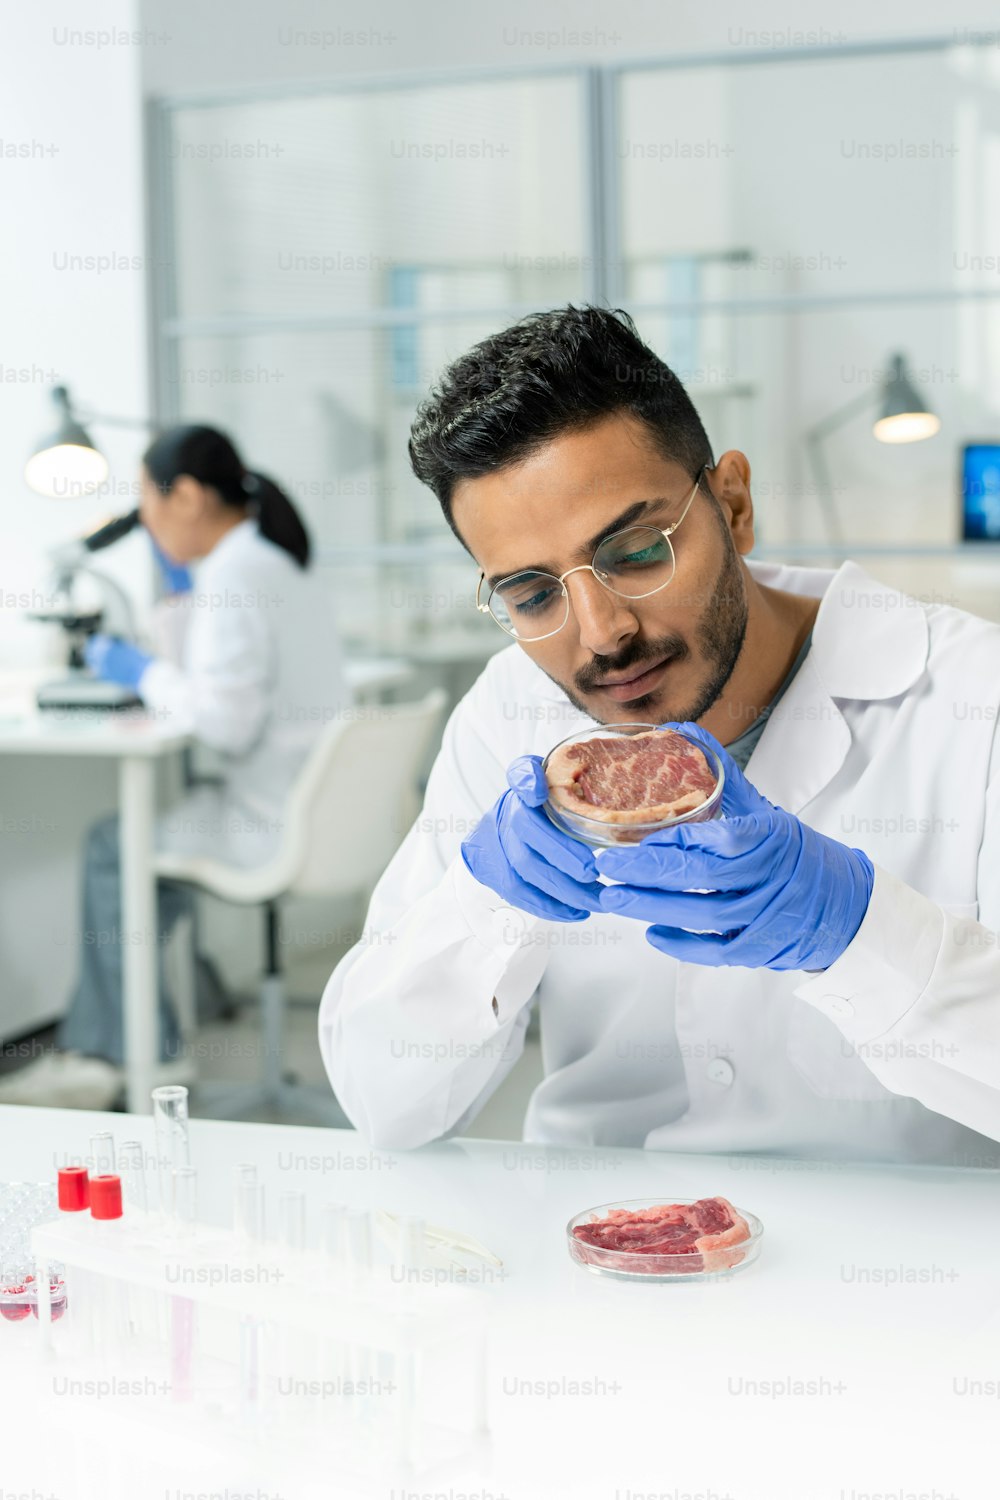 白衣を着た手袋をはめた若い男性研究者が、生の野菜肉が入ったシャーレを持ち、実験室でその特性を研究しています